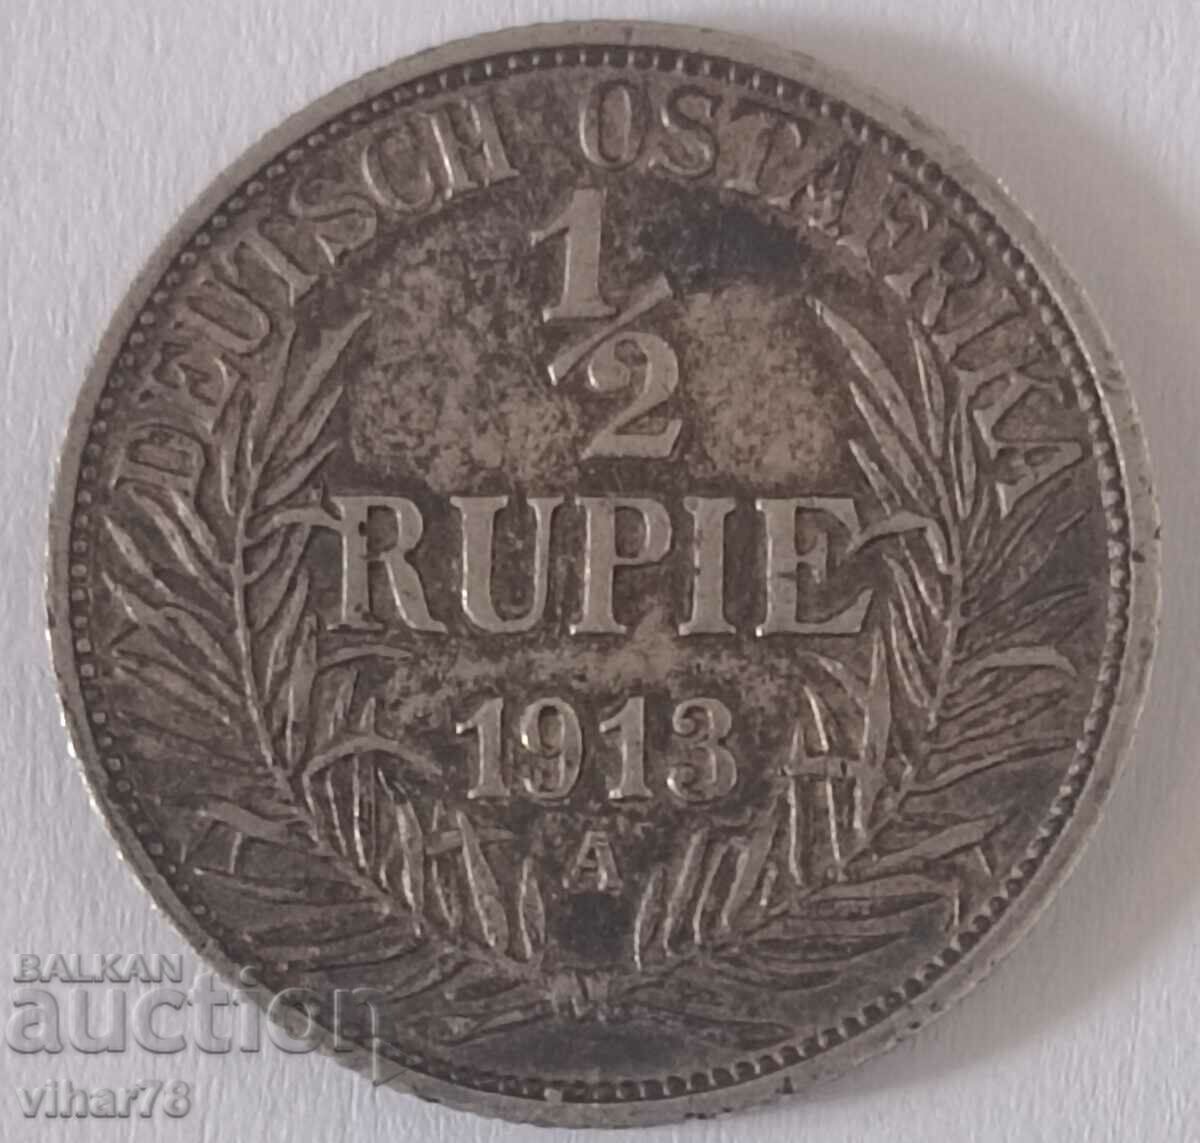 Рядка сребърна монета 1/2 Rupie